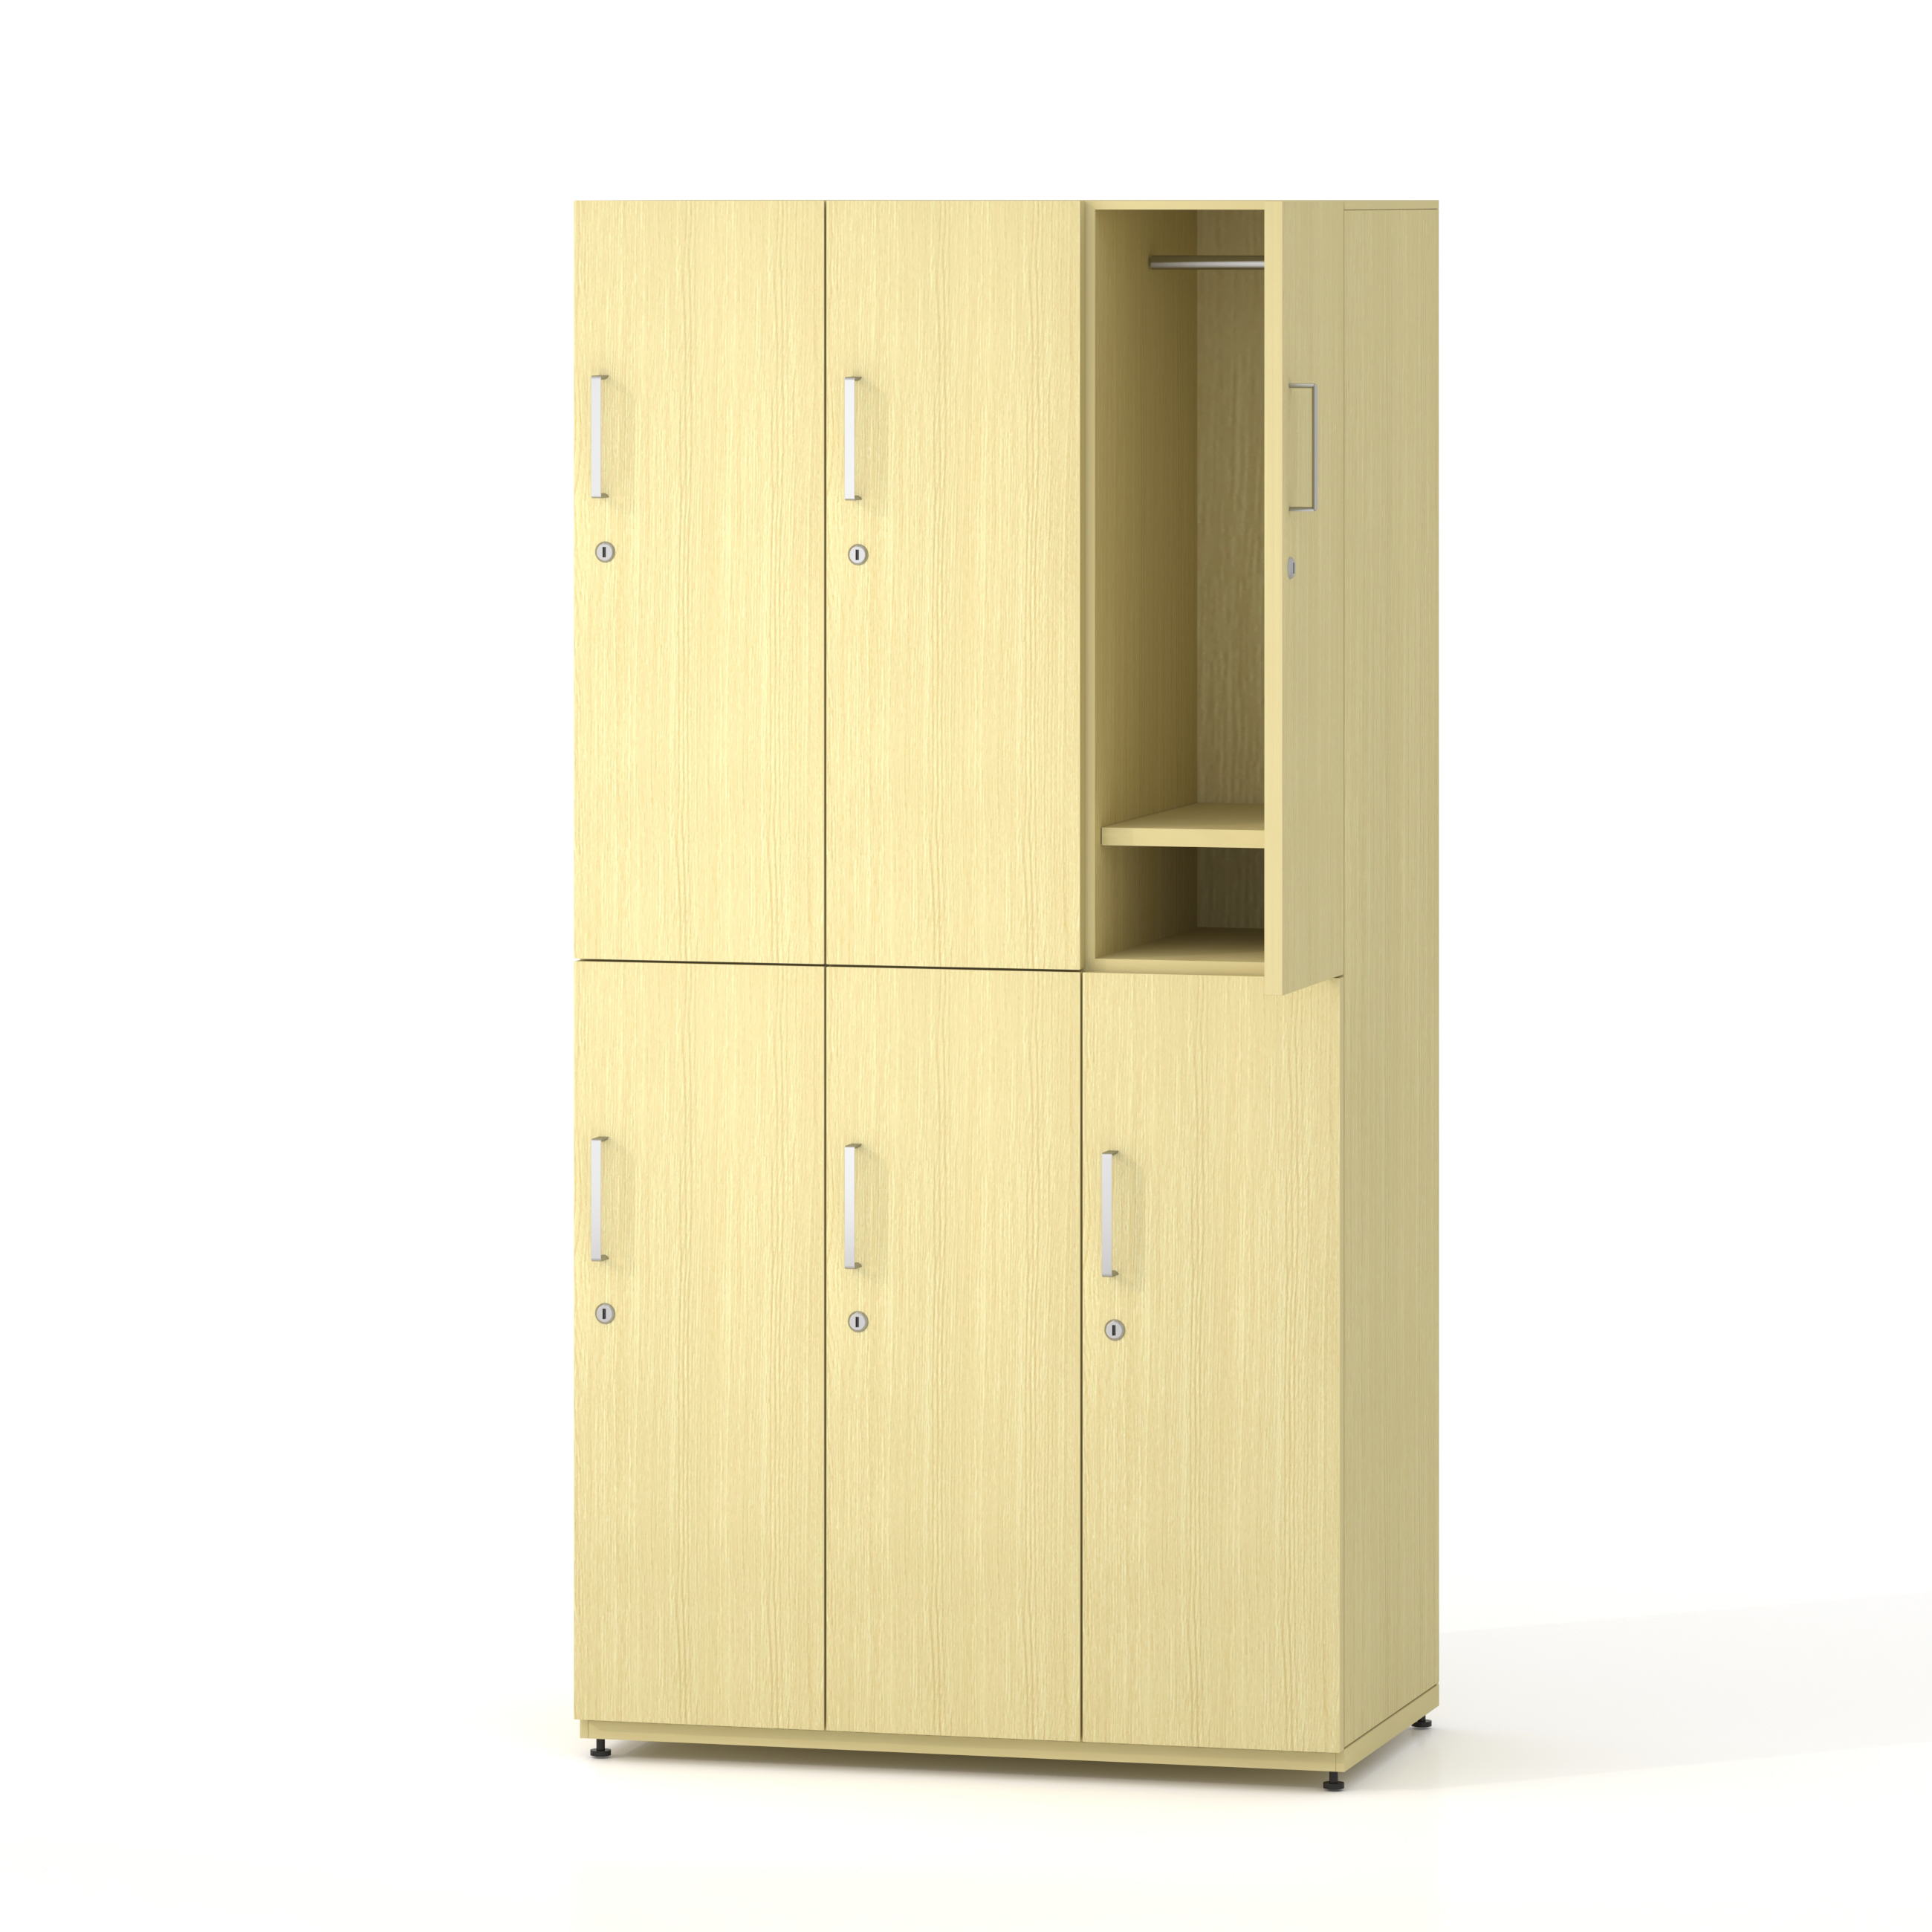 Стальной шкафчик для переноса древесного зерна